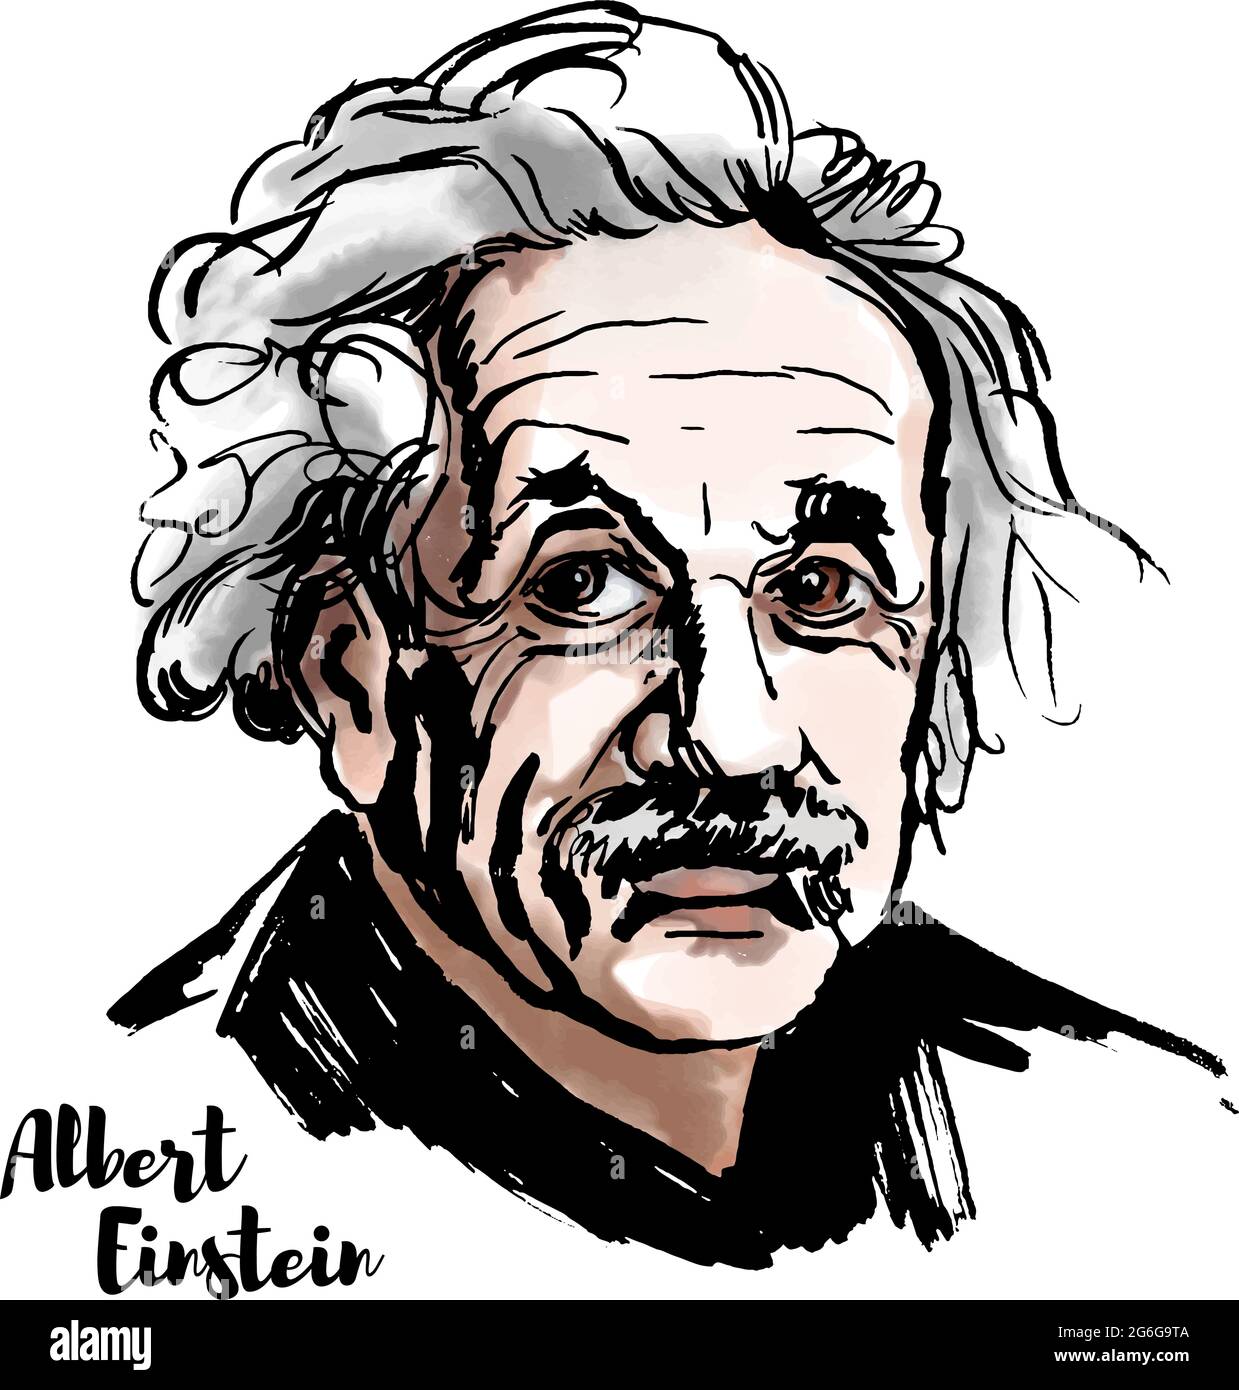 MOSKAU, RUSSLAND - 20. MÄRZ 2018: Albert Einstein Aquarell-Vektorportrait mit Farbkonturen. Der theoretische Physiker, der die Theorie von r entwickelte Stock Vektor